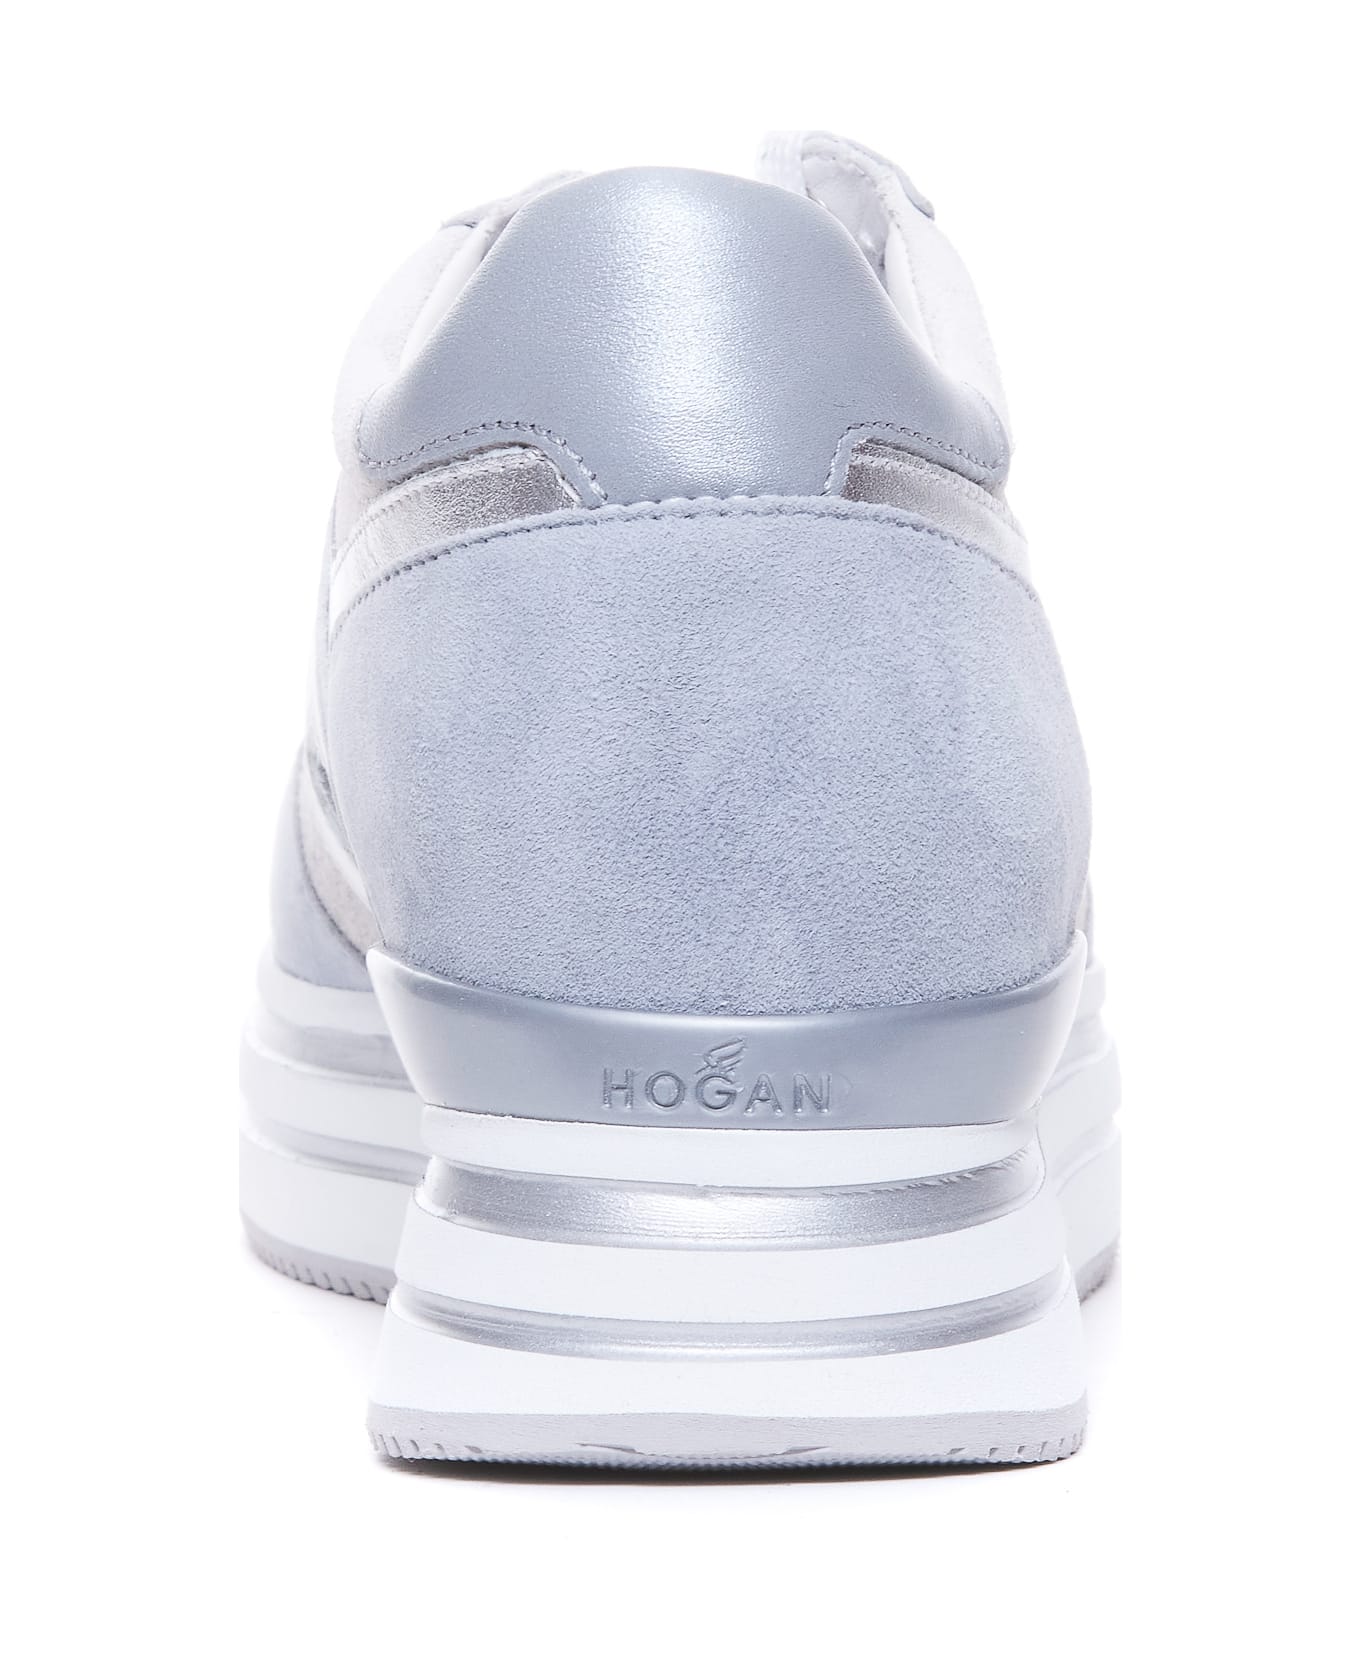 Hogan Midi H222 Sneakers - Grey